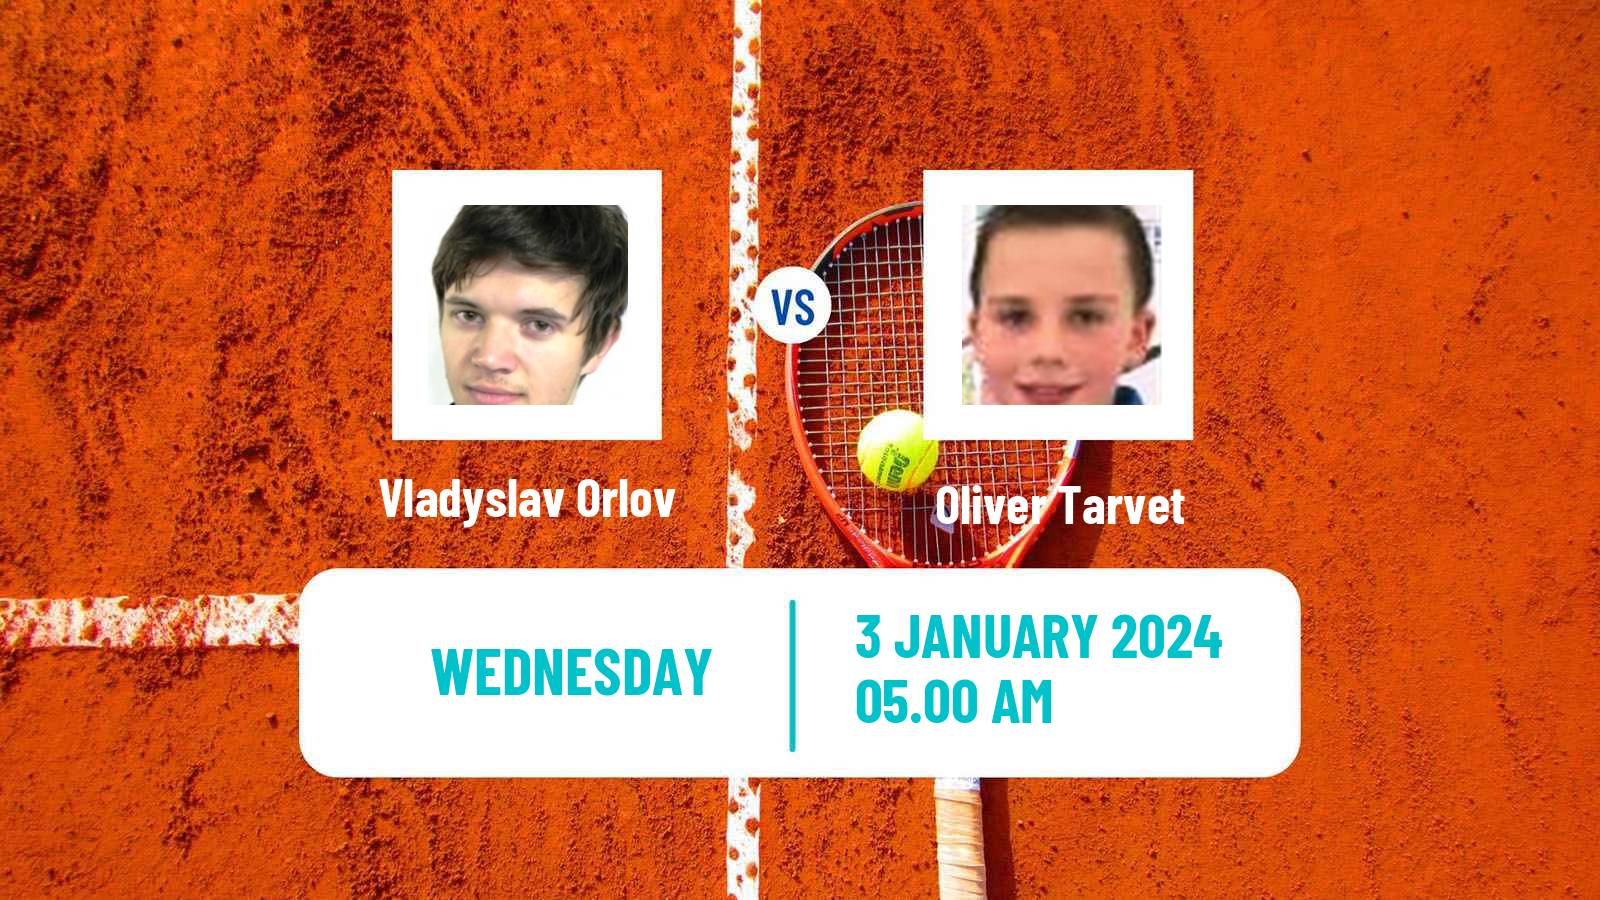 Tennis ITF M15 Monastir Men Vladyslav Orlov - Oliver Tarvet